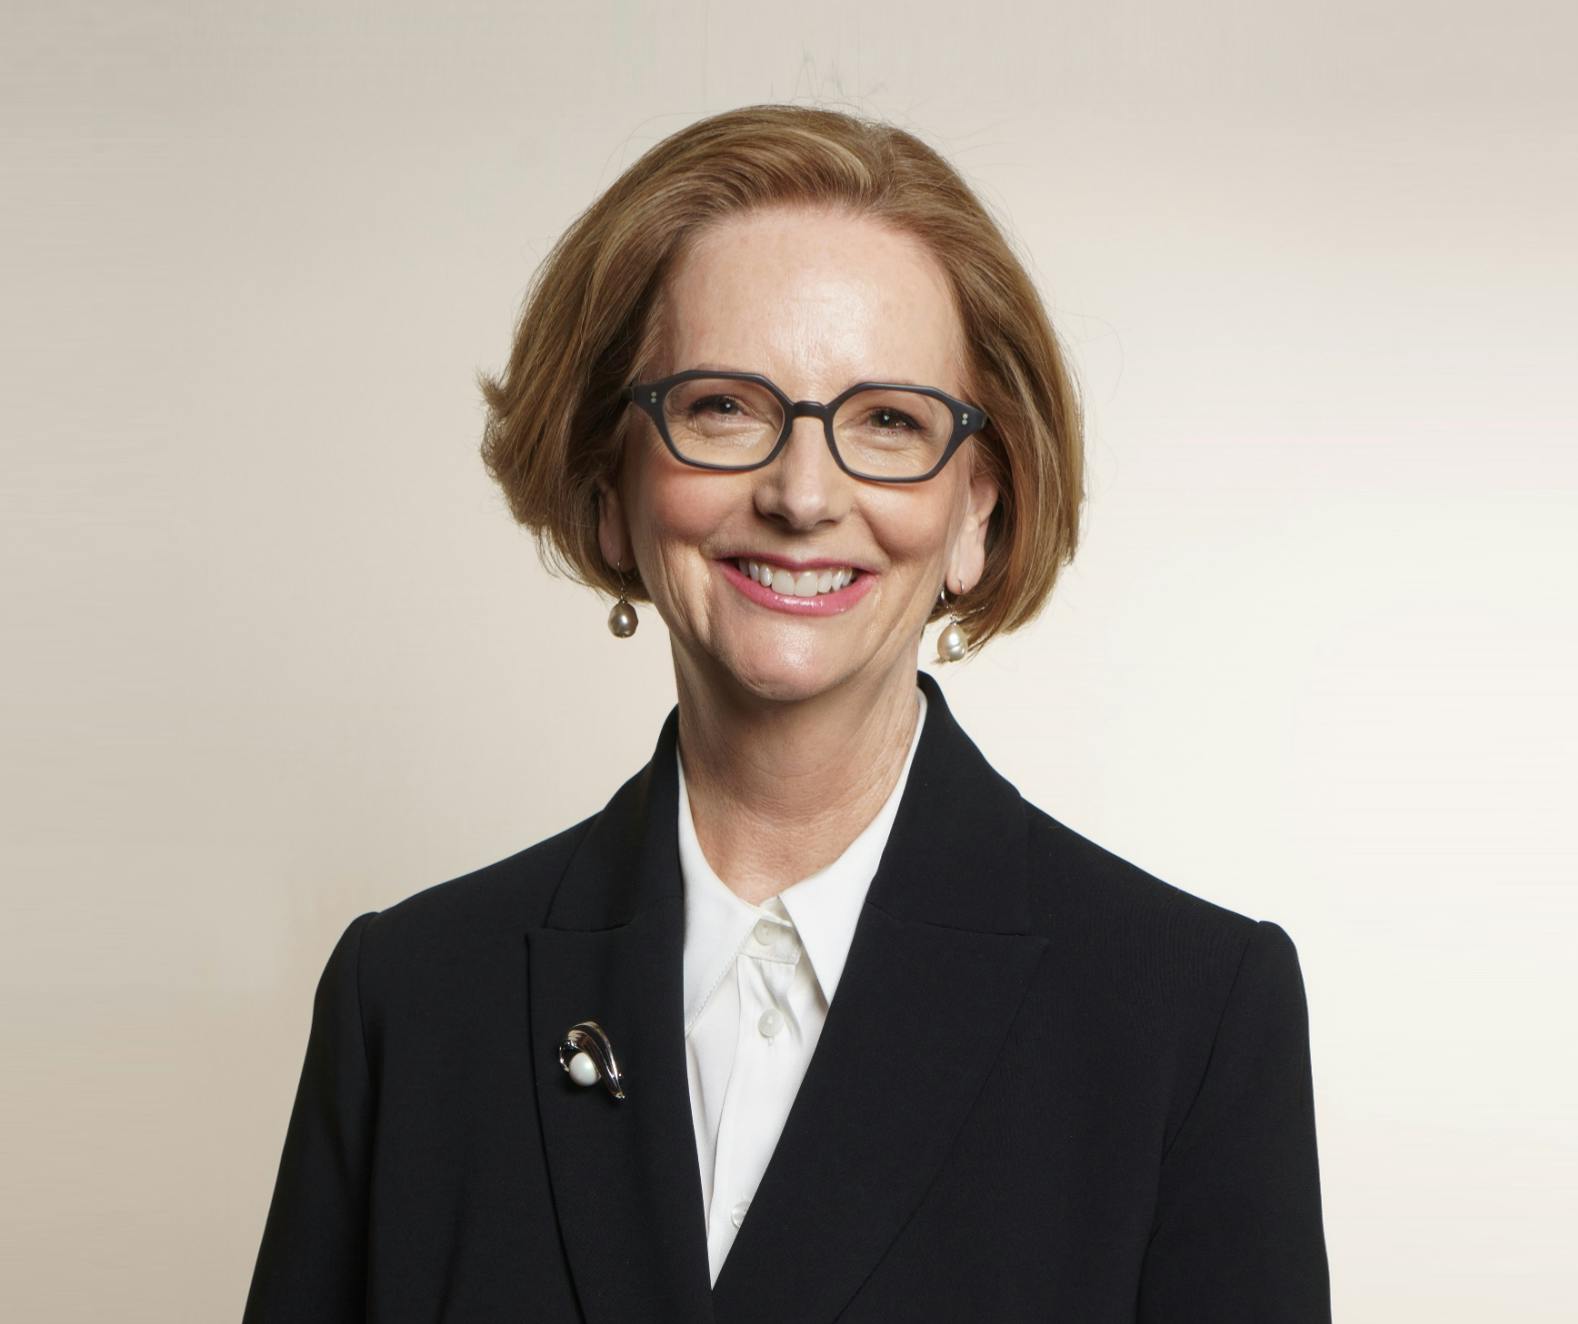 Team member, Hon Julia Gillard AC